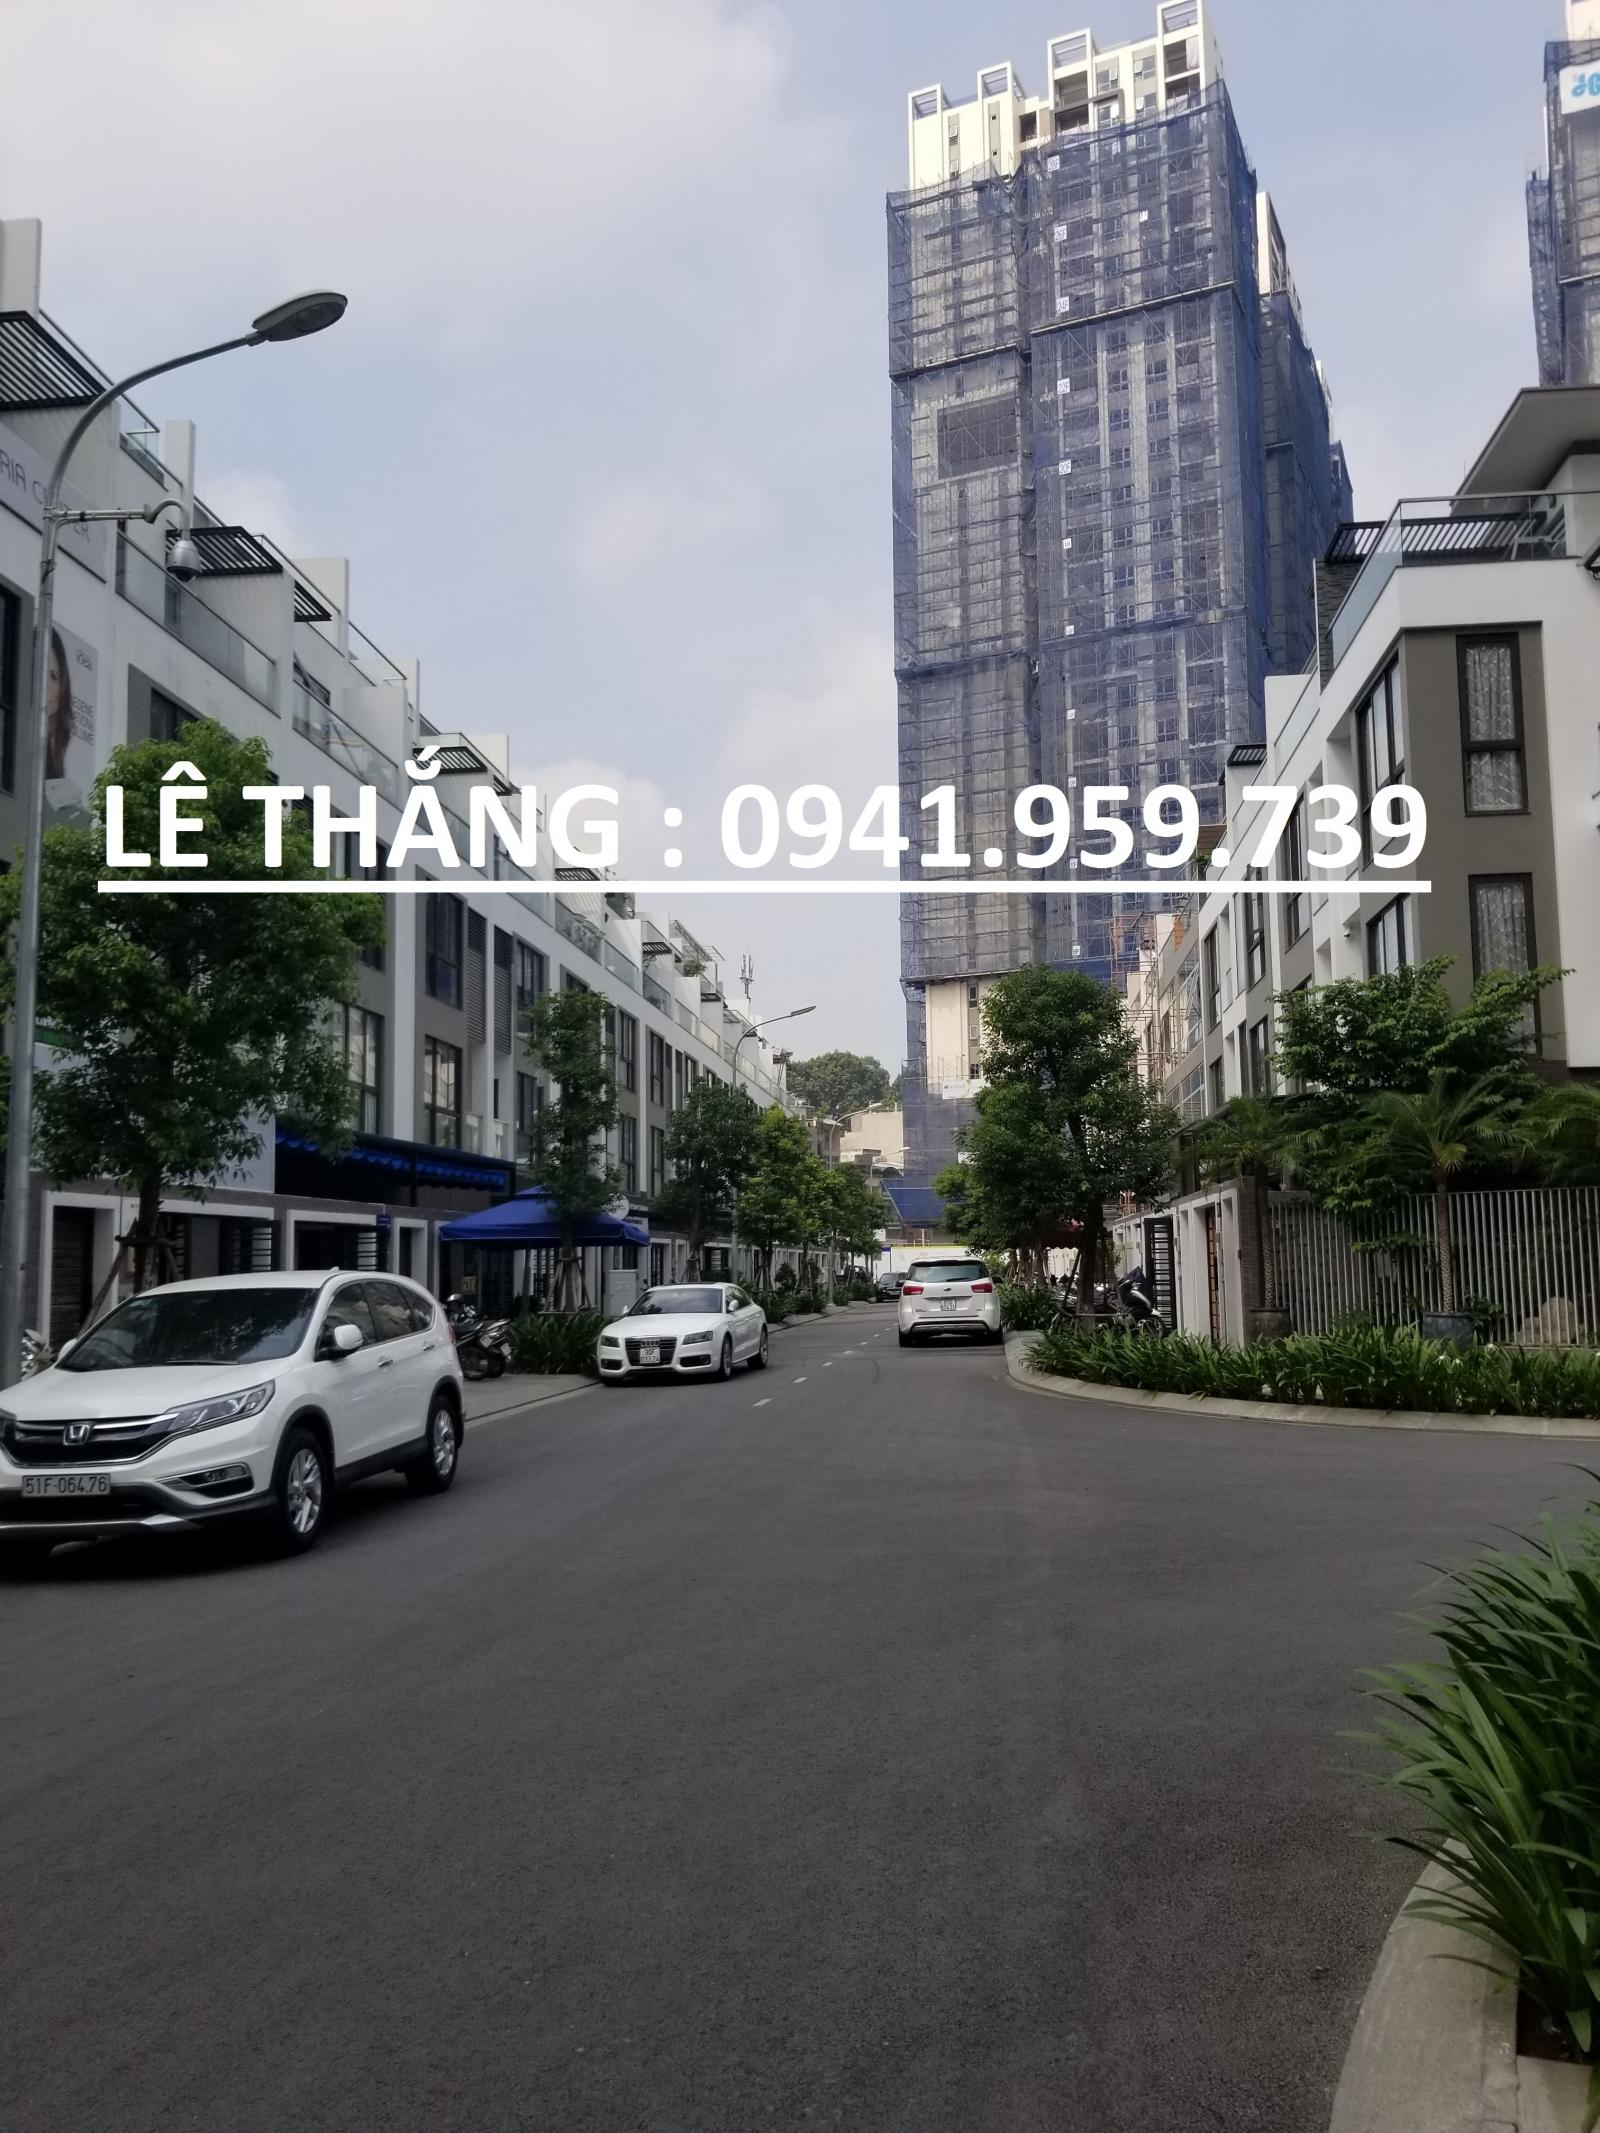 Bán gấp nhà mặt tiền Trần Quý Khoách, Phường Tân Định, Quận 1 DT: 16m x25m 2 lầu, Giá 98 tỷ TL